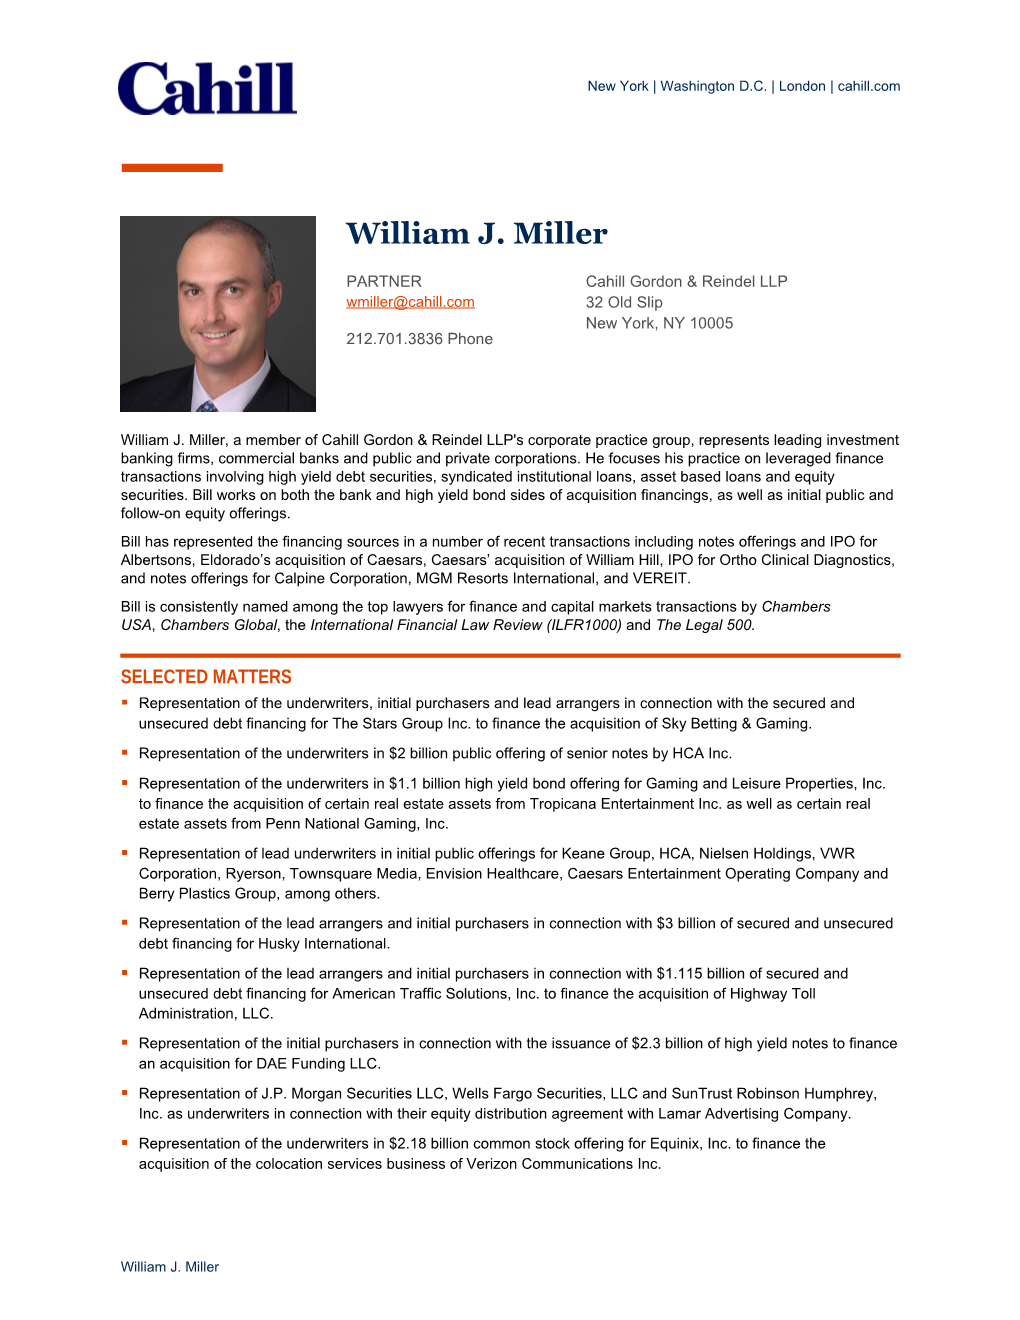 William J. Miller